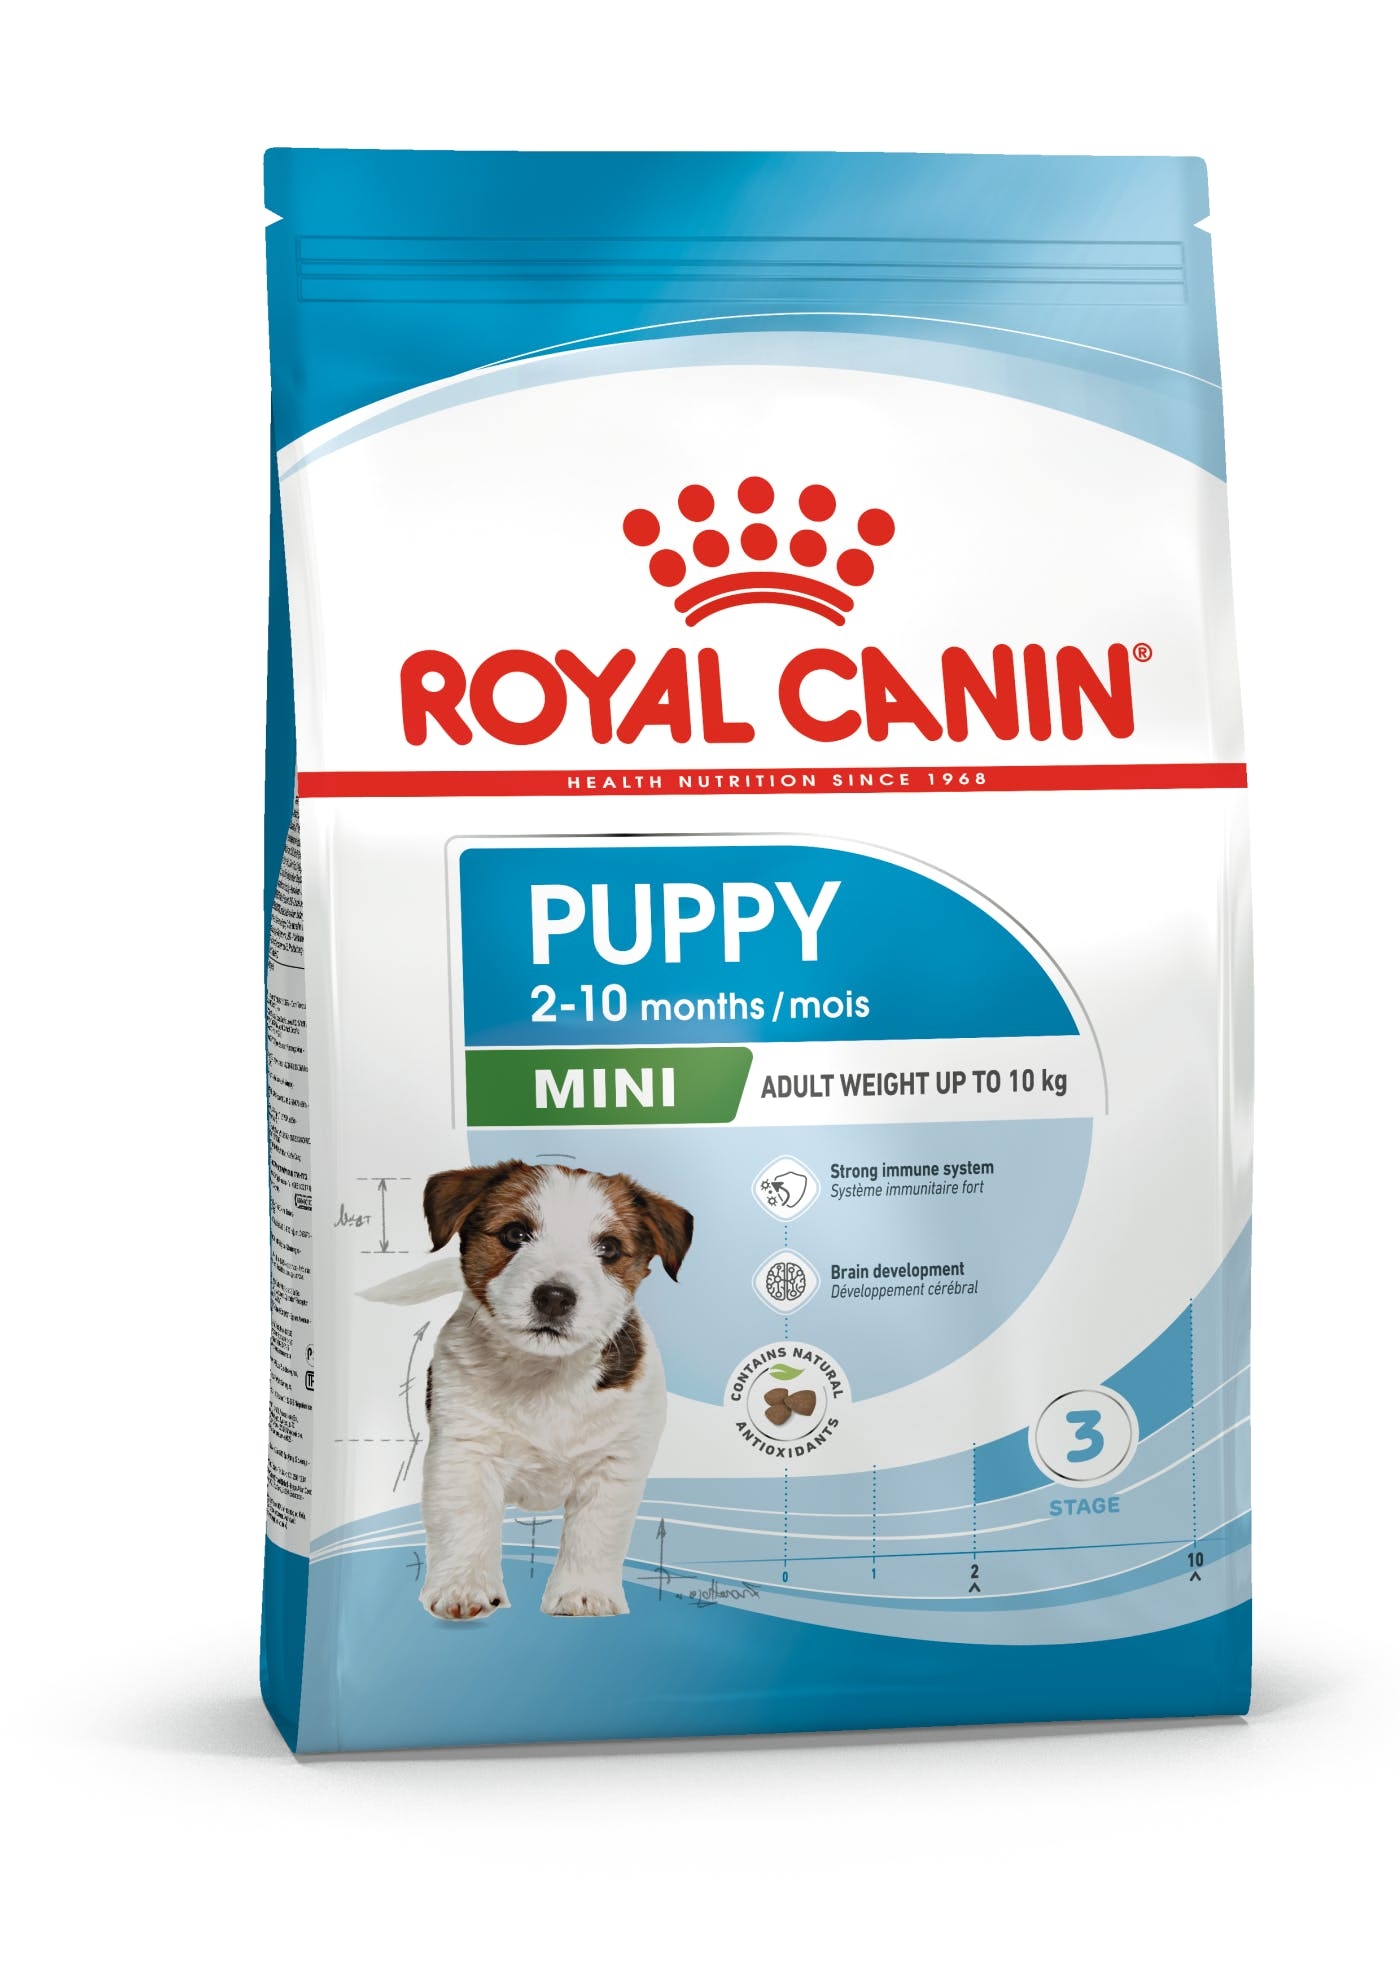 Billede af Royal Canin Mini Puppy. Fra 2 til 10 måneder. Voksenvægt 1-10 kg.